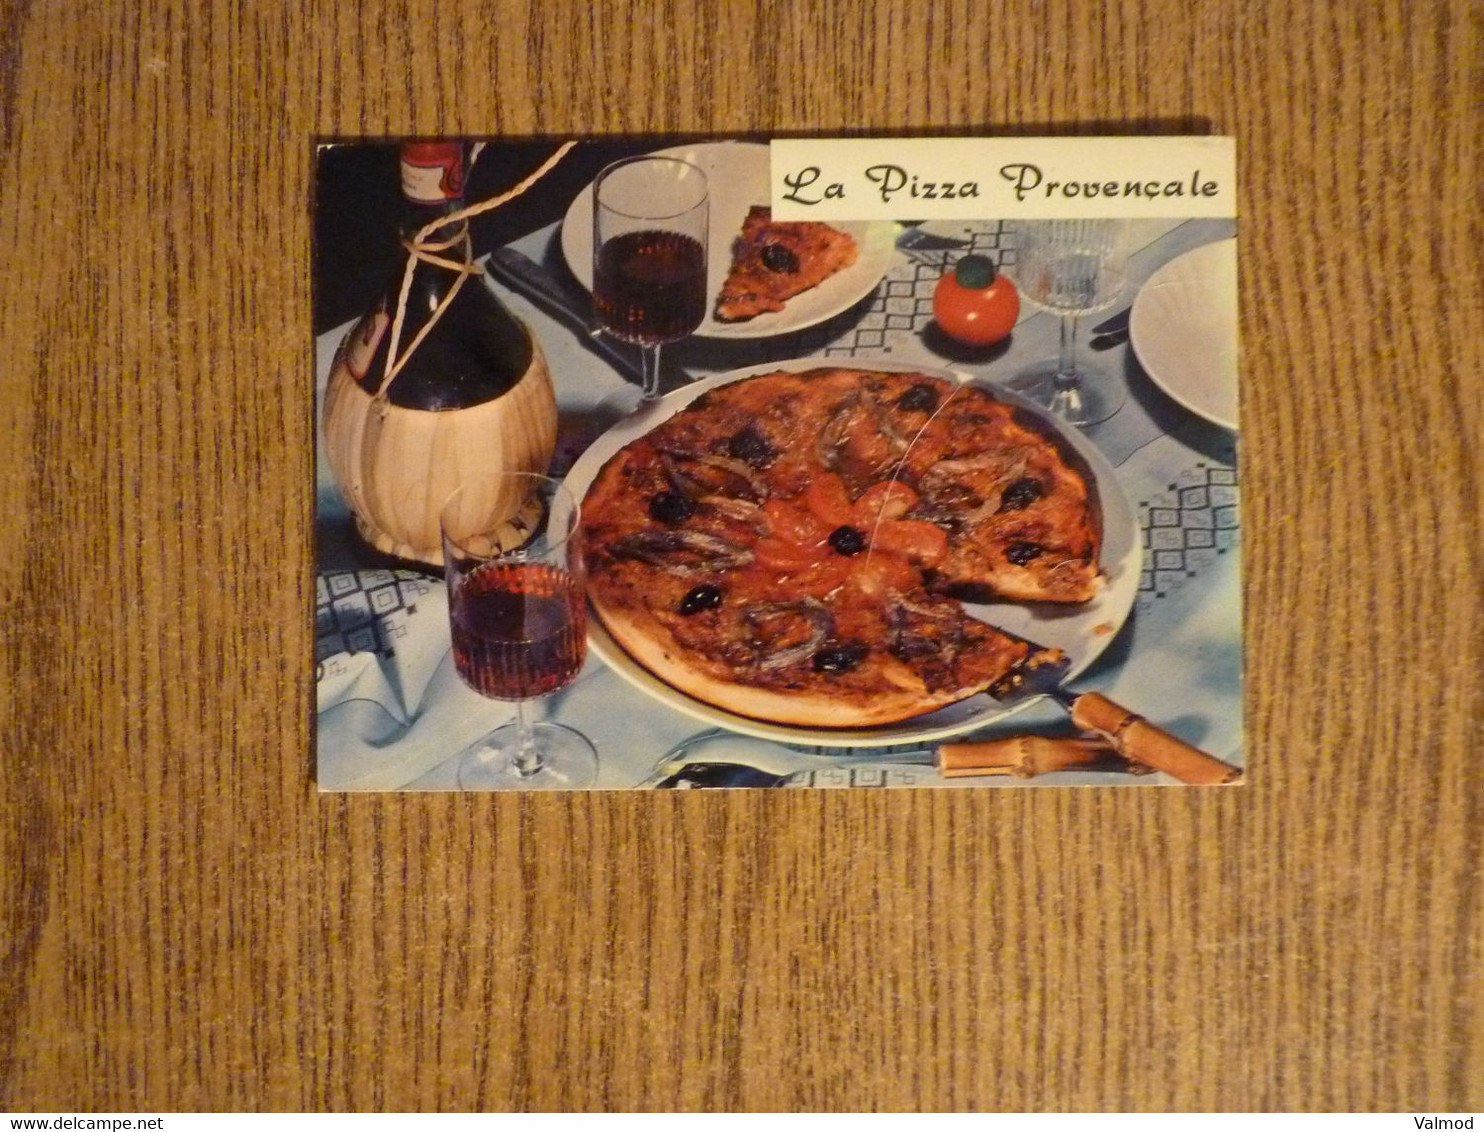 Lot de 20 CPSM Recettes de Cuisine - Toutes photographiées Recto/Verso - Voir Détails sur Photos -10,5x15 cm.